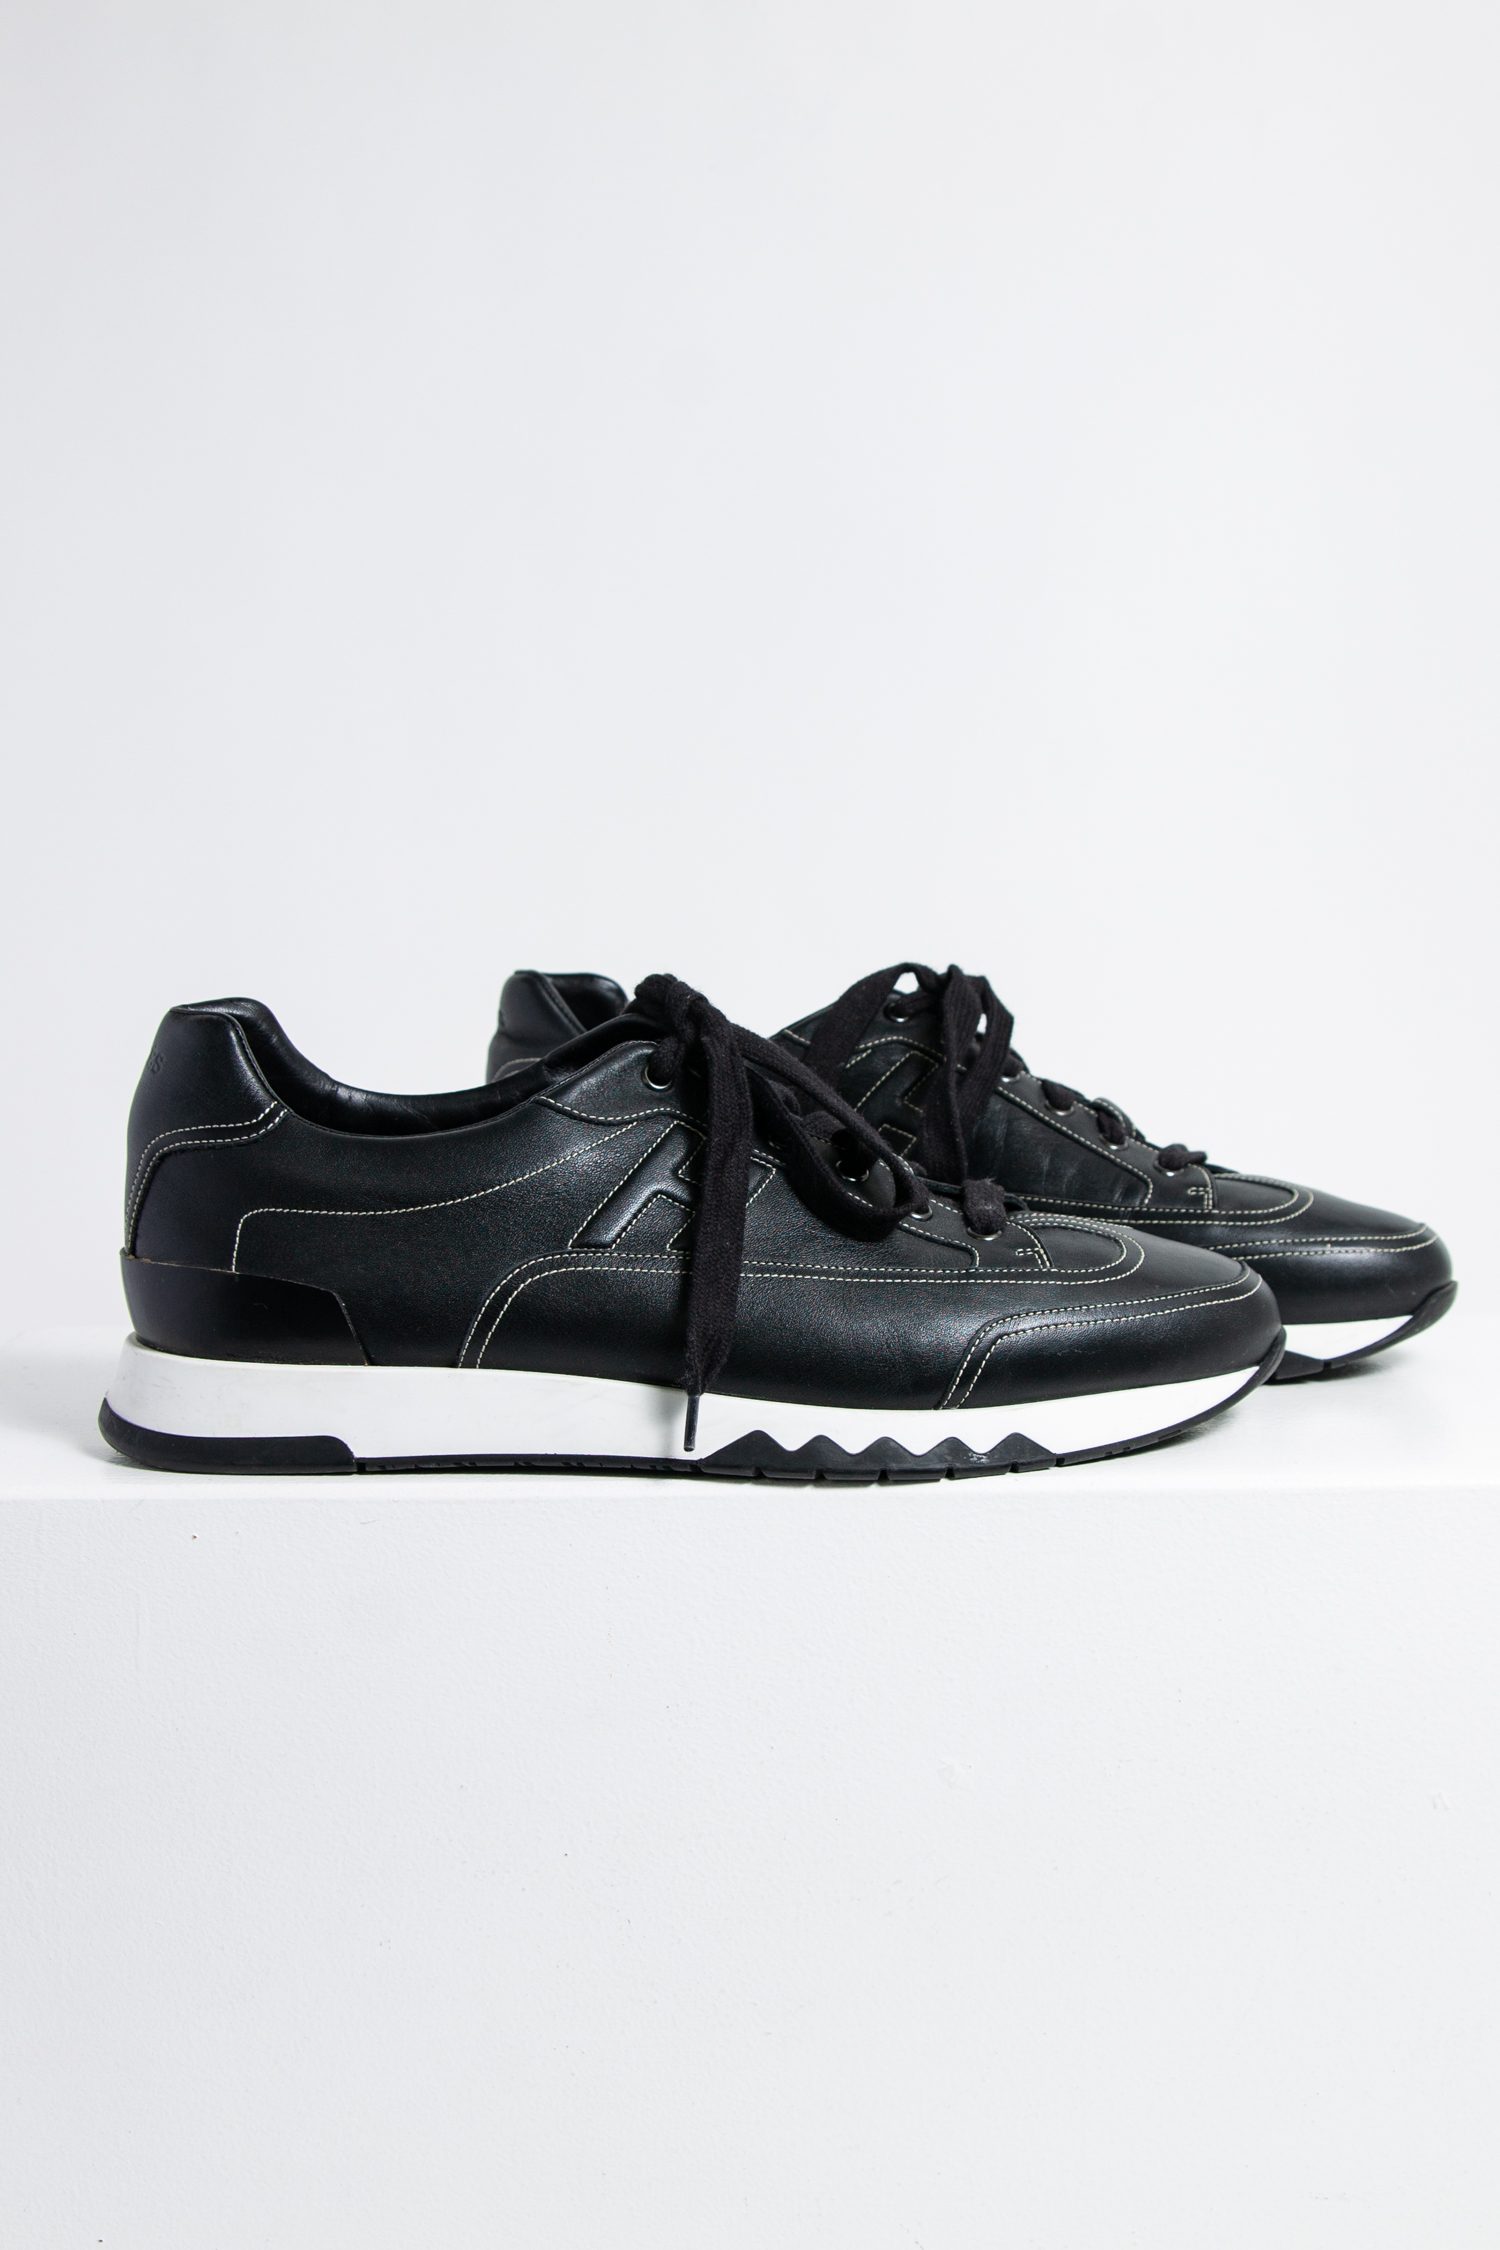 Hermès "Trail" Sneaker in schwarz mit weißen Details